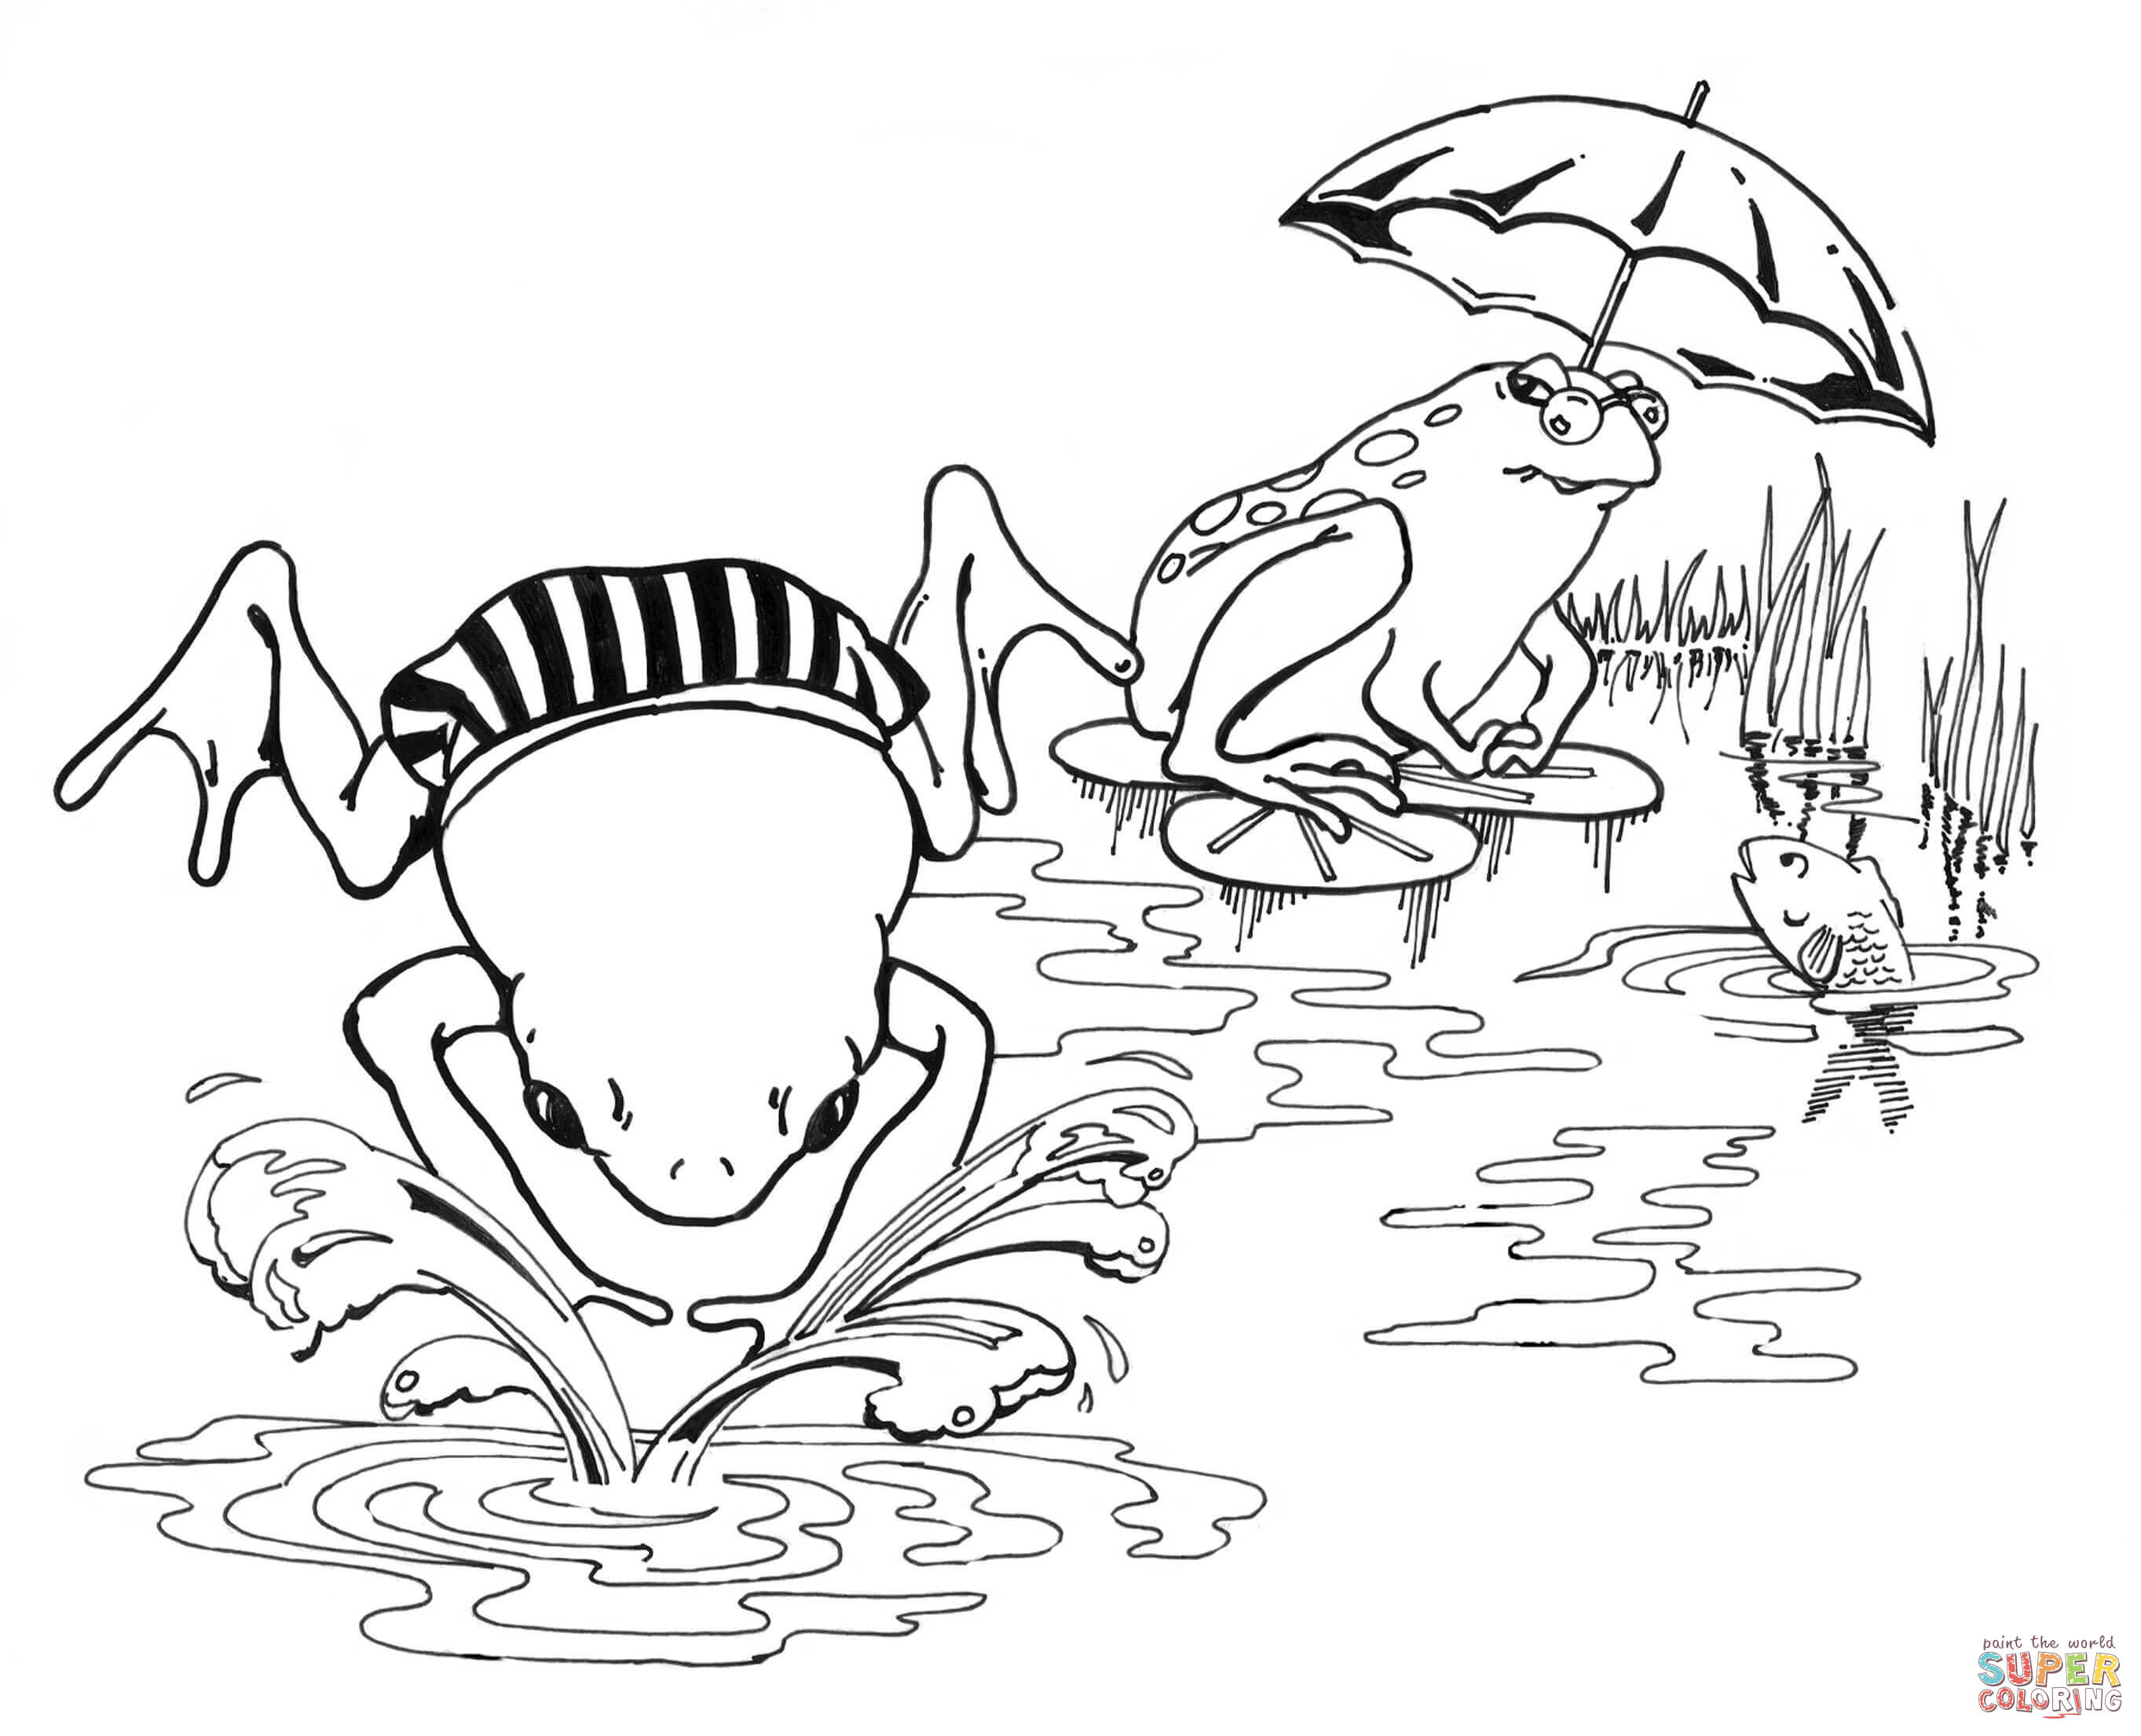 Amphibian coloring #3, Download drawings